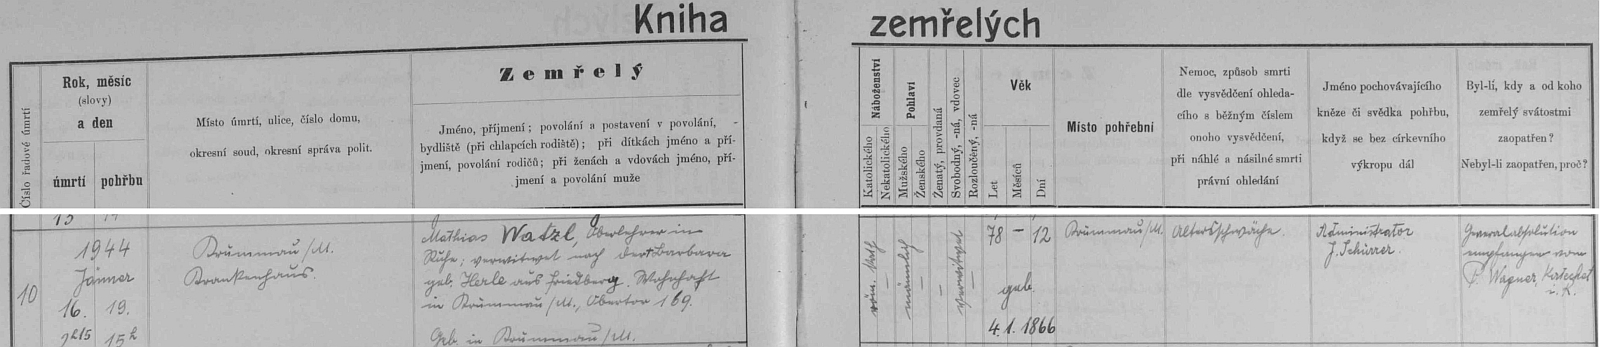 Záznam o úmrtí v českokrumlovské knize zemřelých